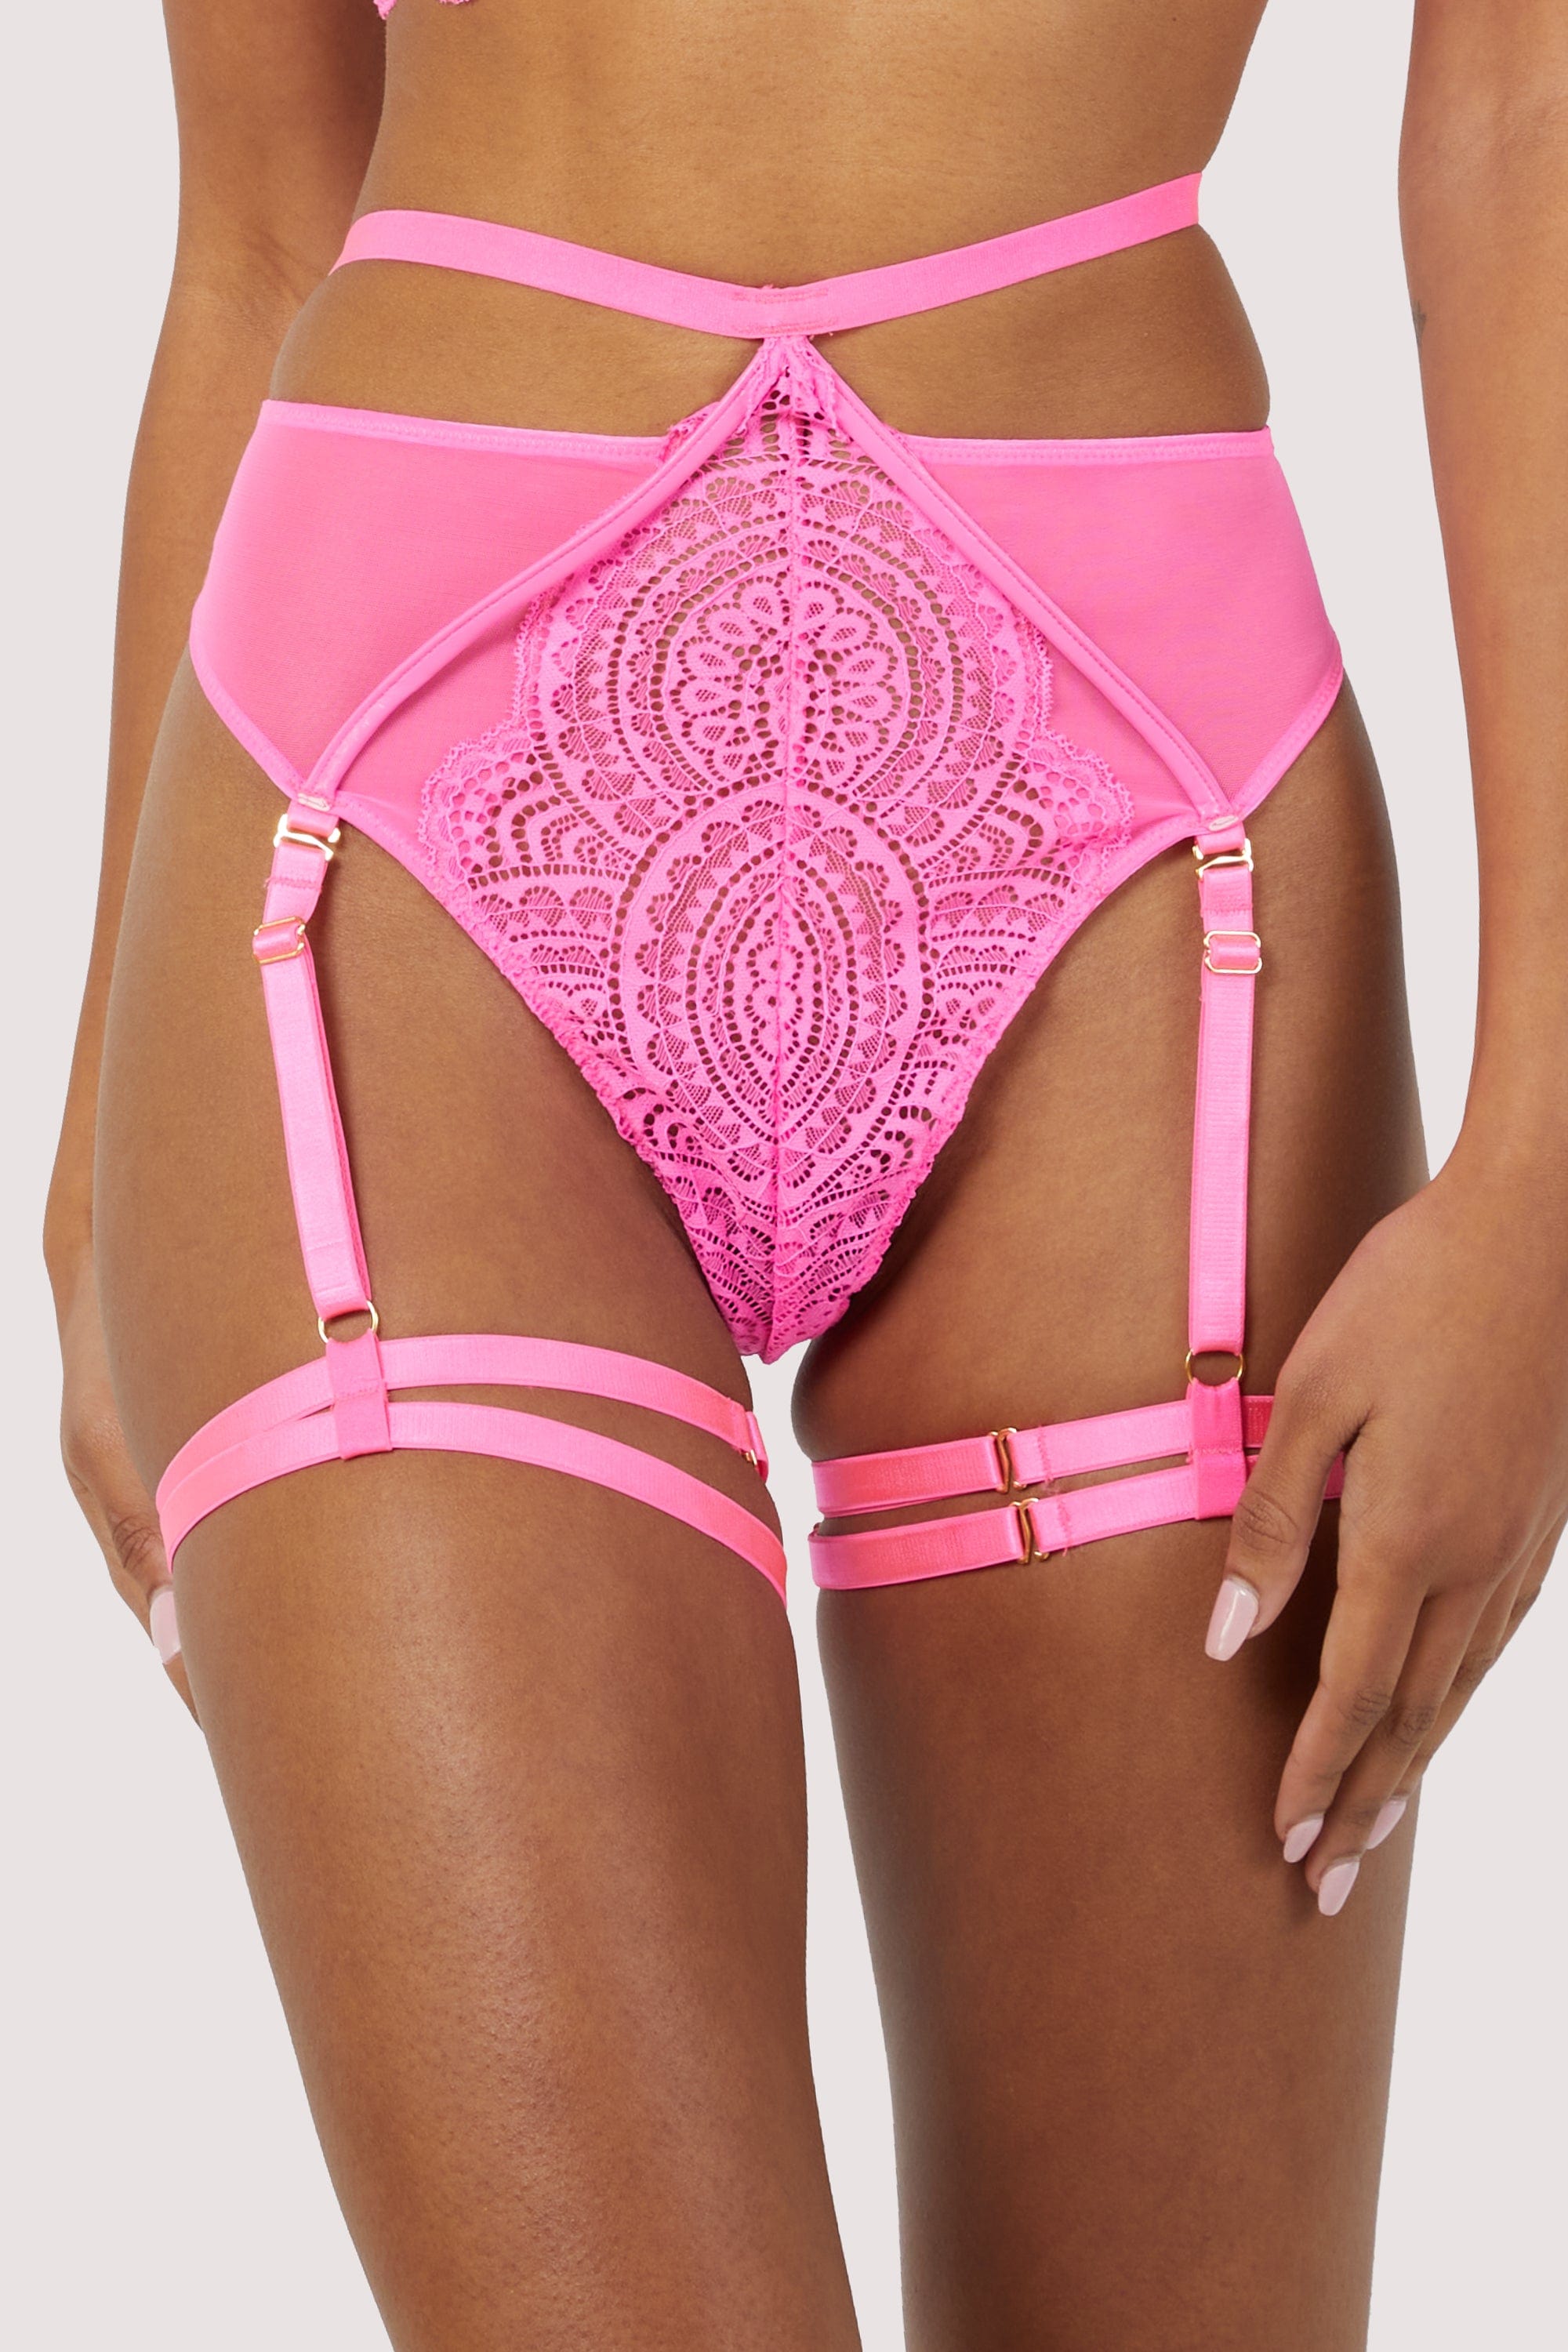 Victoria's Secret 32DDD BRA SET high-waist garter Panty thong